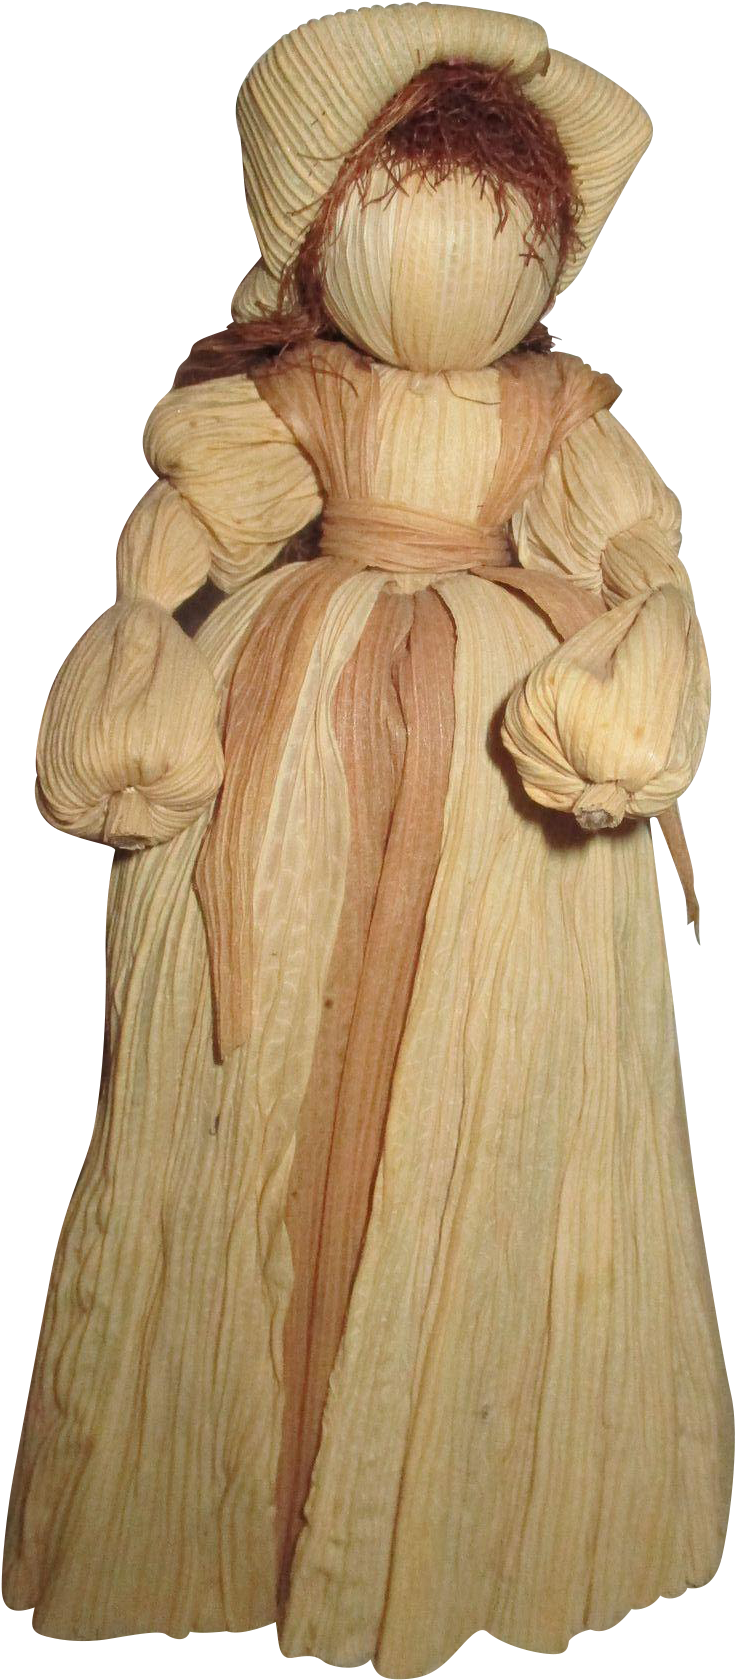 Vintage Corn Husk Doll - Figurine (1679x1679)